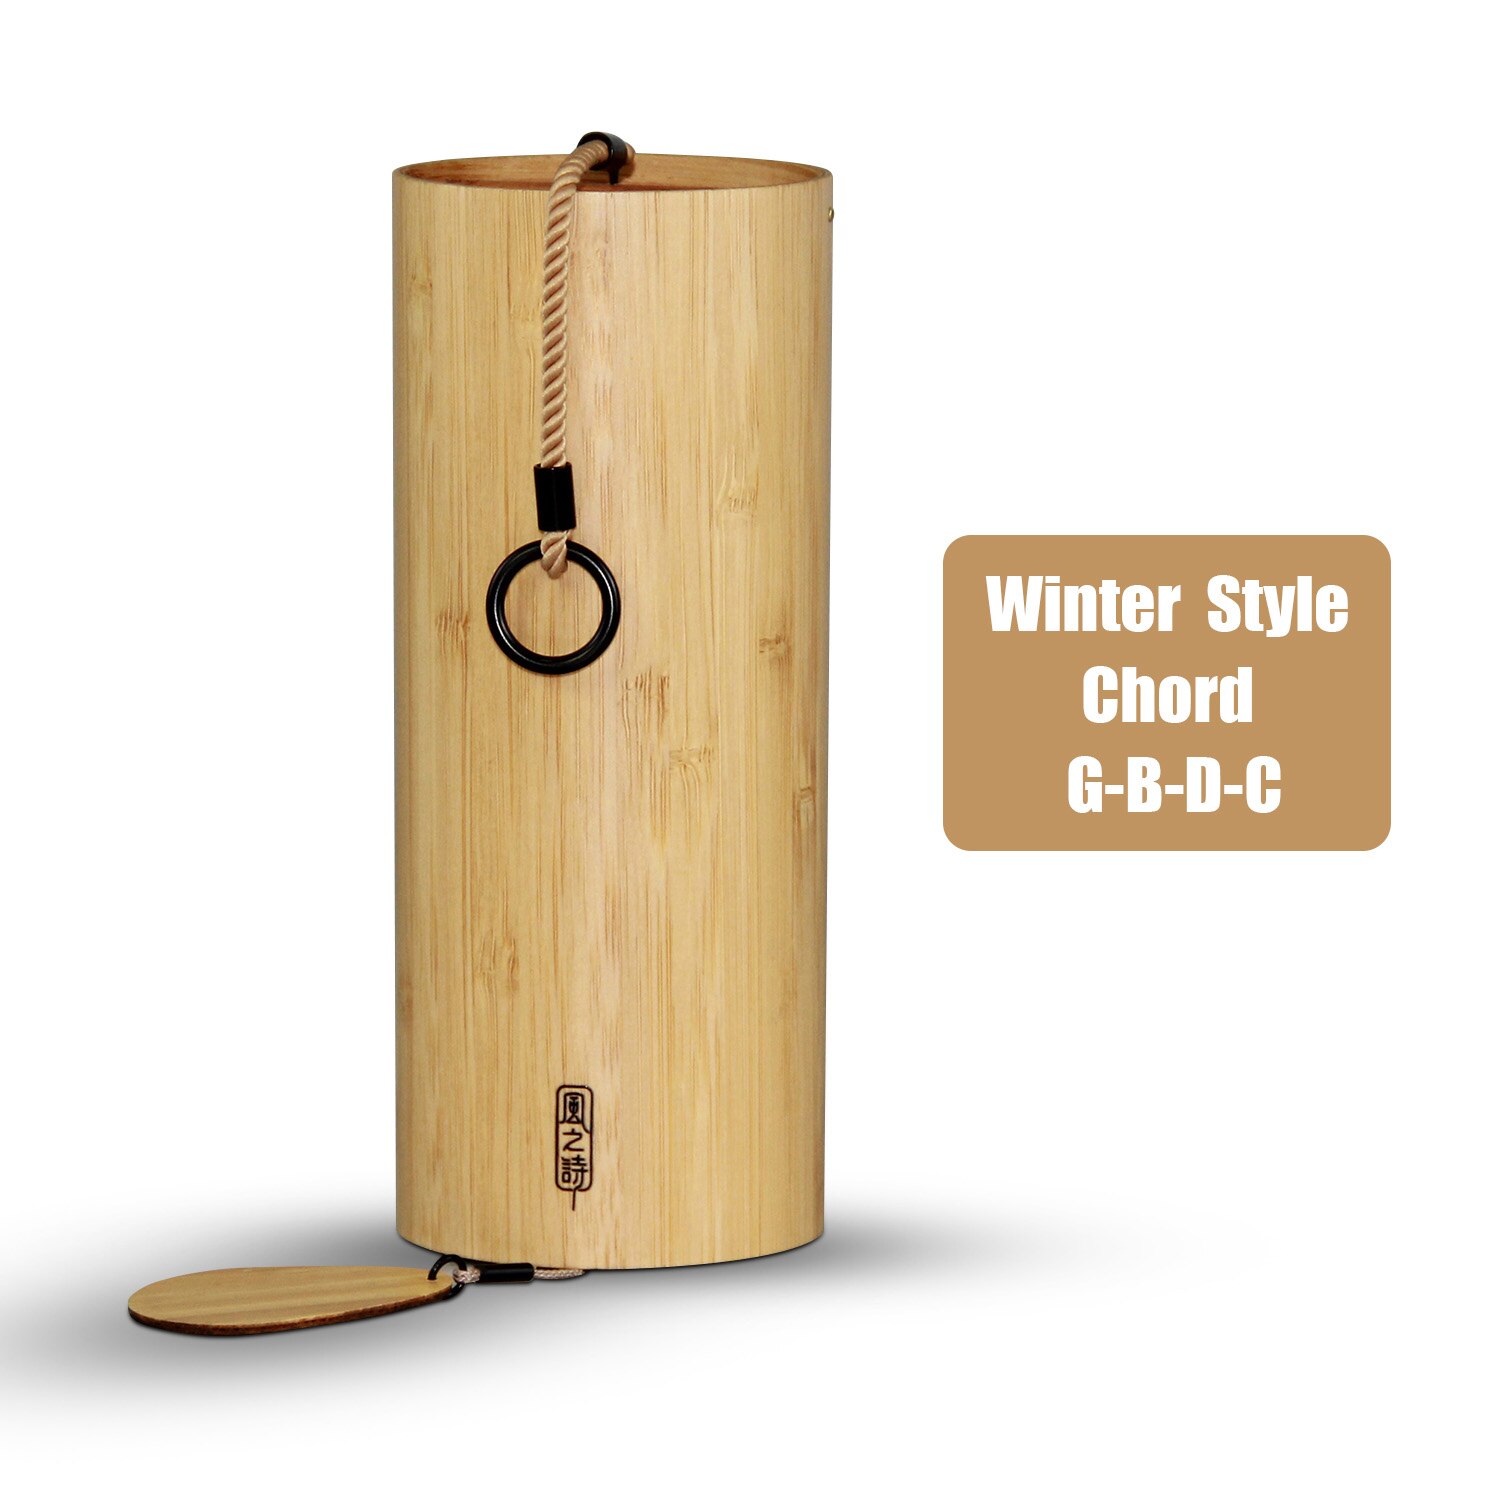 Bamboe Windgong Windchime Windbell Voor Outdoor Home Decoratie Zen Meditatie Winter Akkoord G-B-D-C